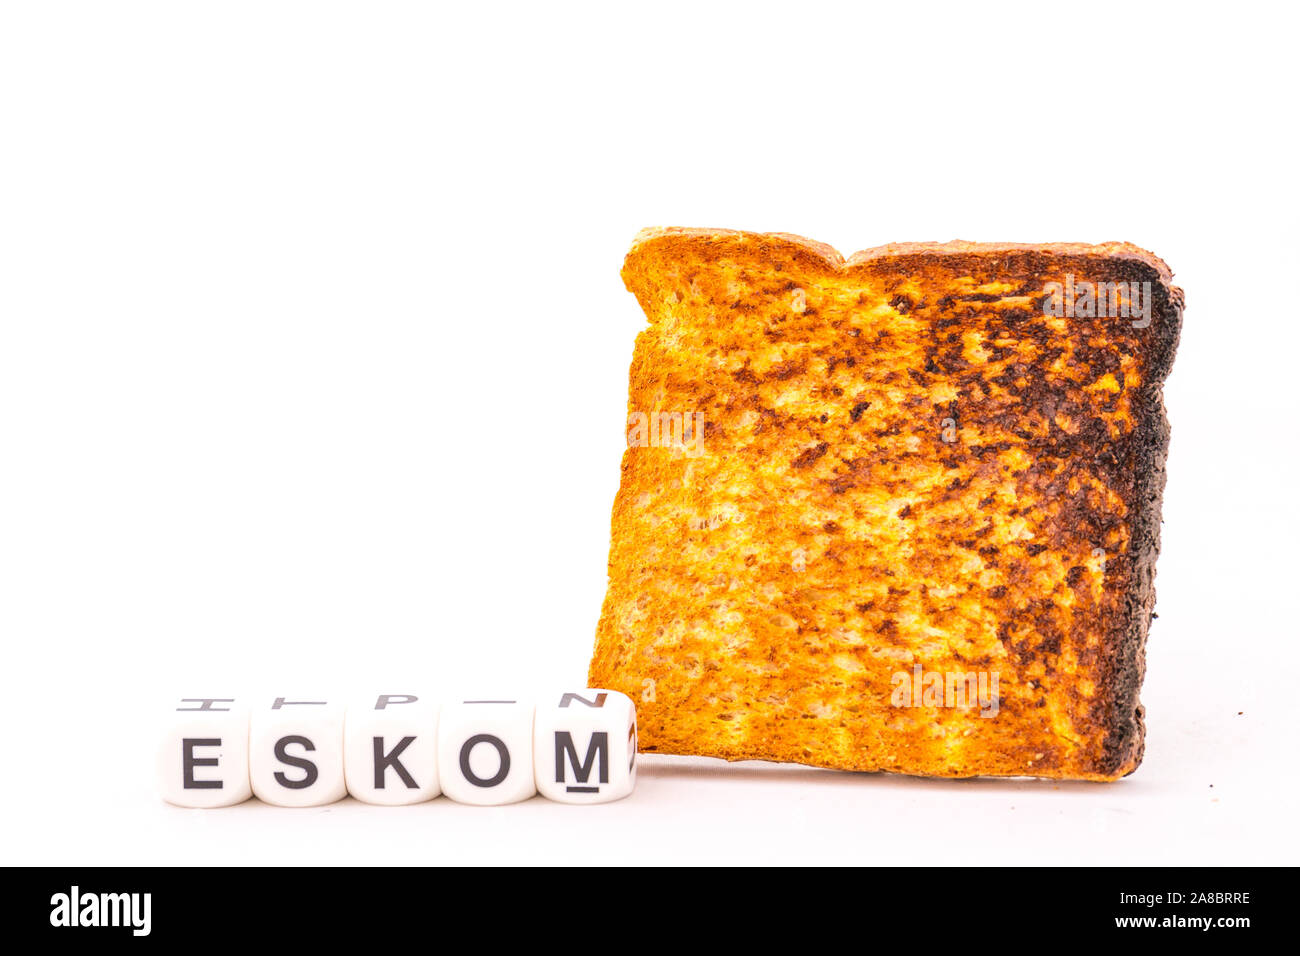 Energieversorger Eskom in Südafrika und ein Stück der verbrannten Toast auf einem weißen Hintergrund Bild mit Kopie Raum im Querformat isoliert Stockfoto